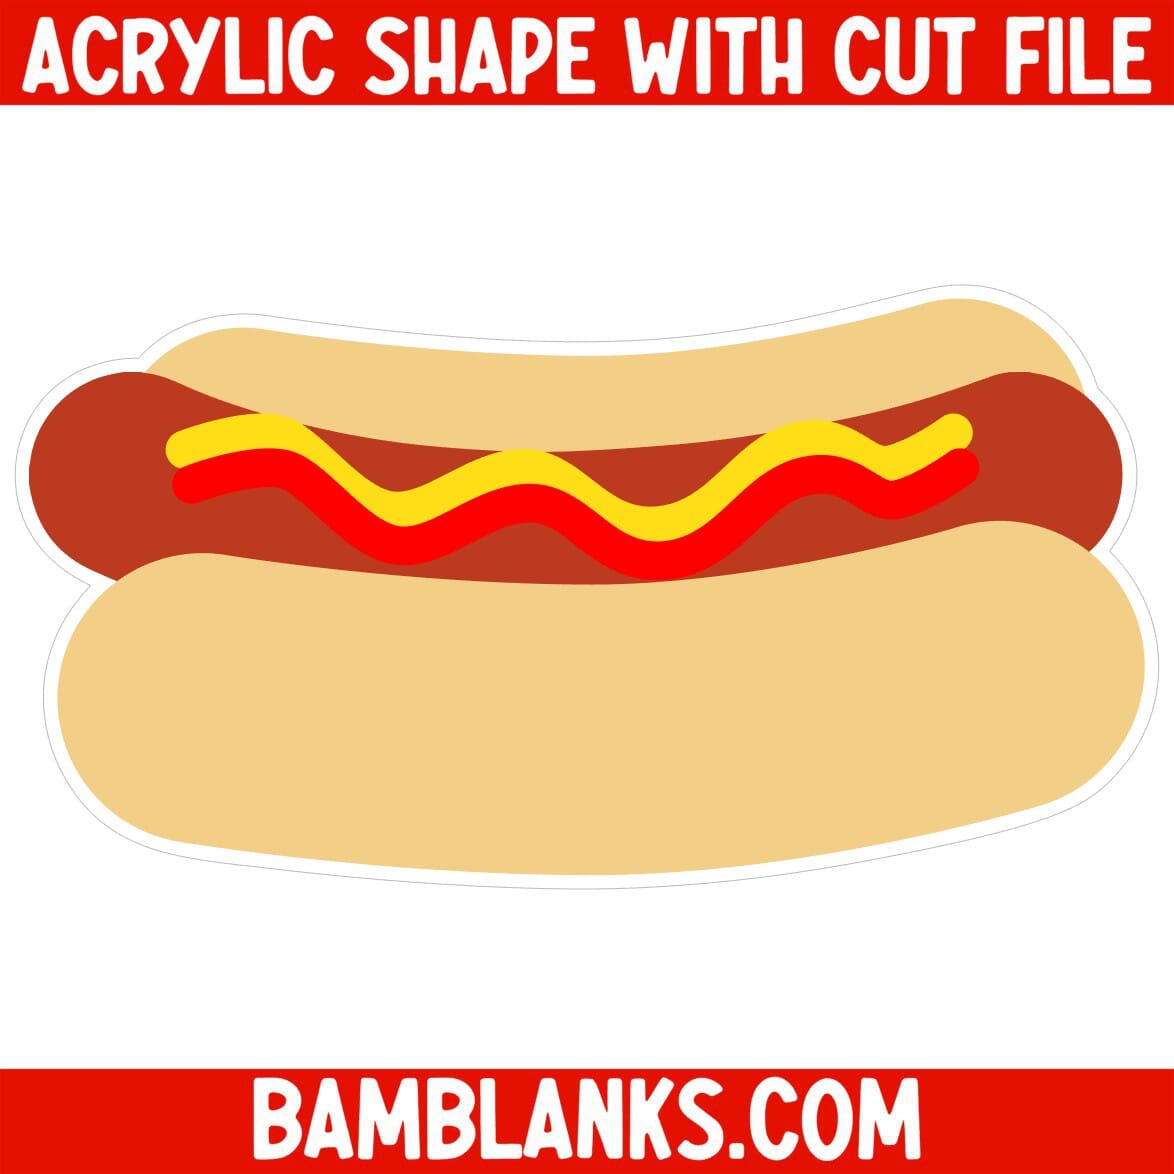 Hot Dog - Acrylic Shape #040